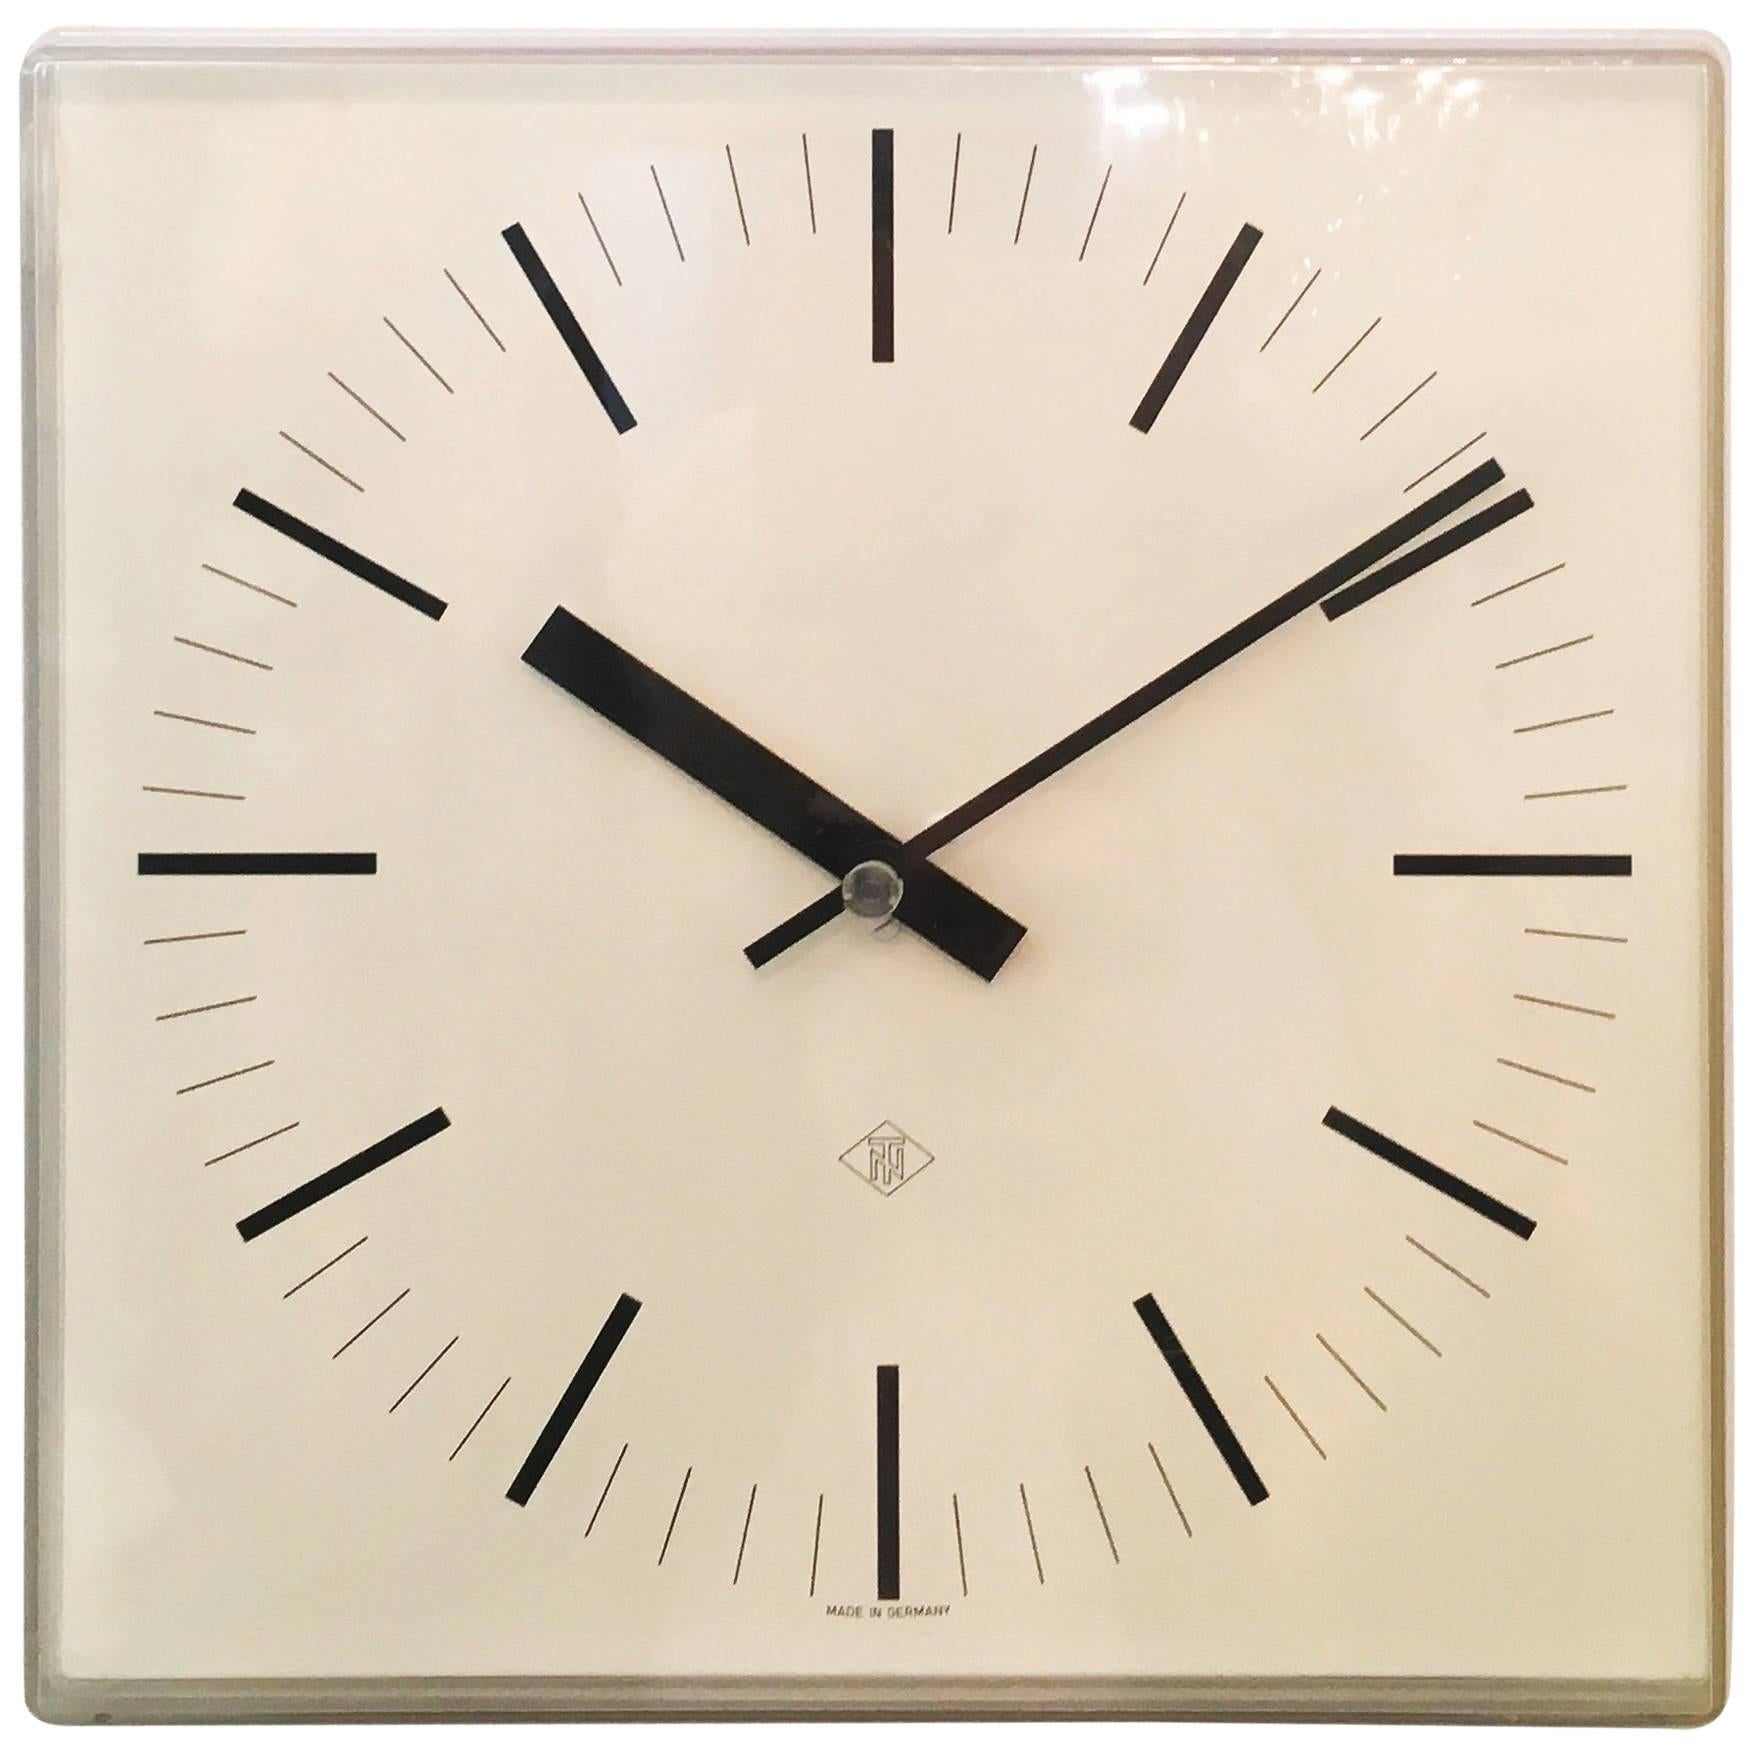 Elegant German Telenorma Electric Wall Clock